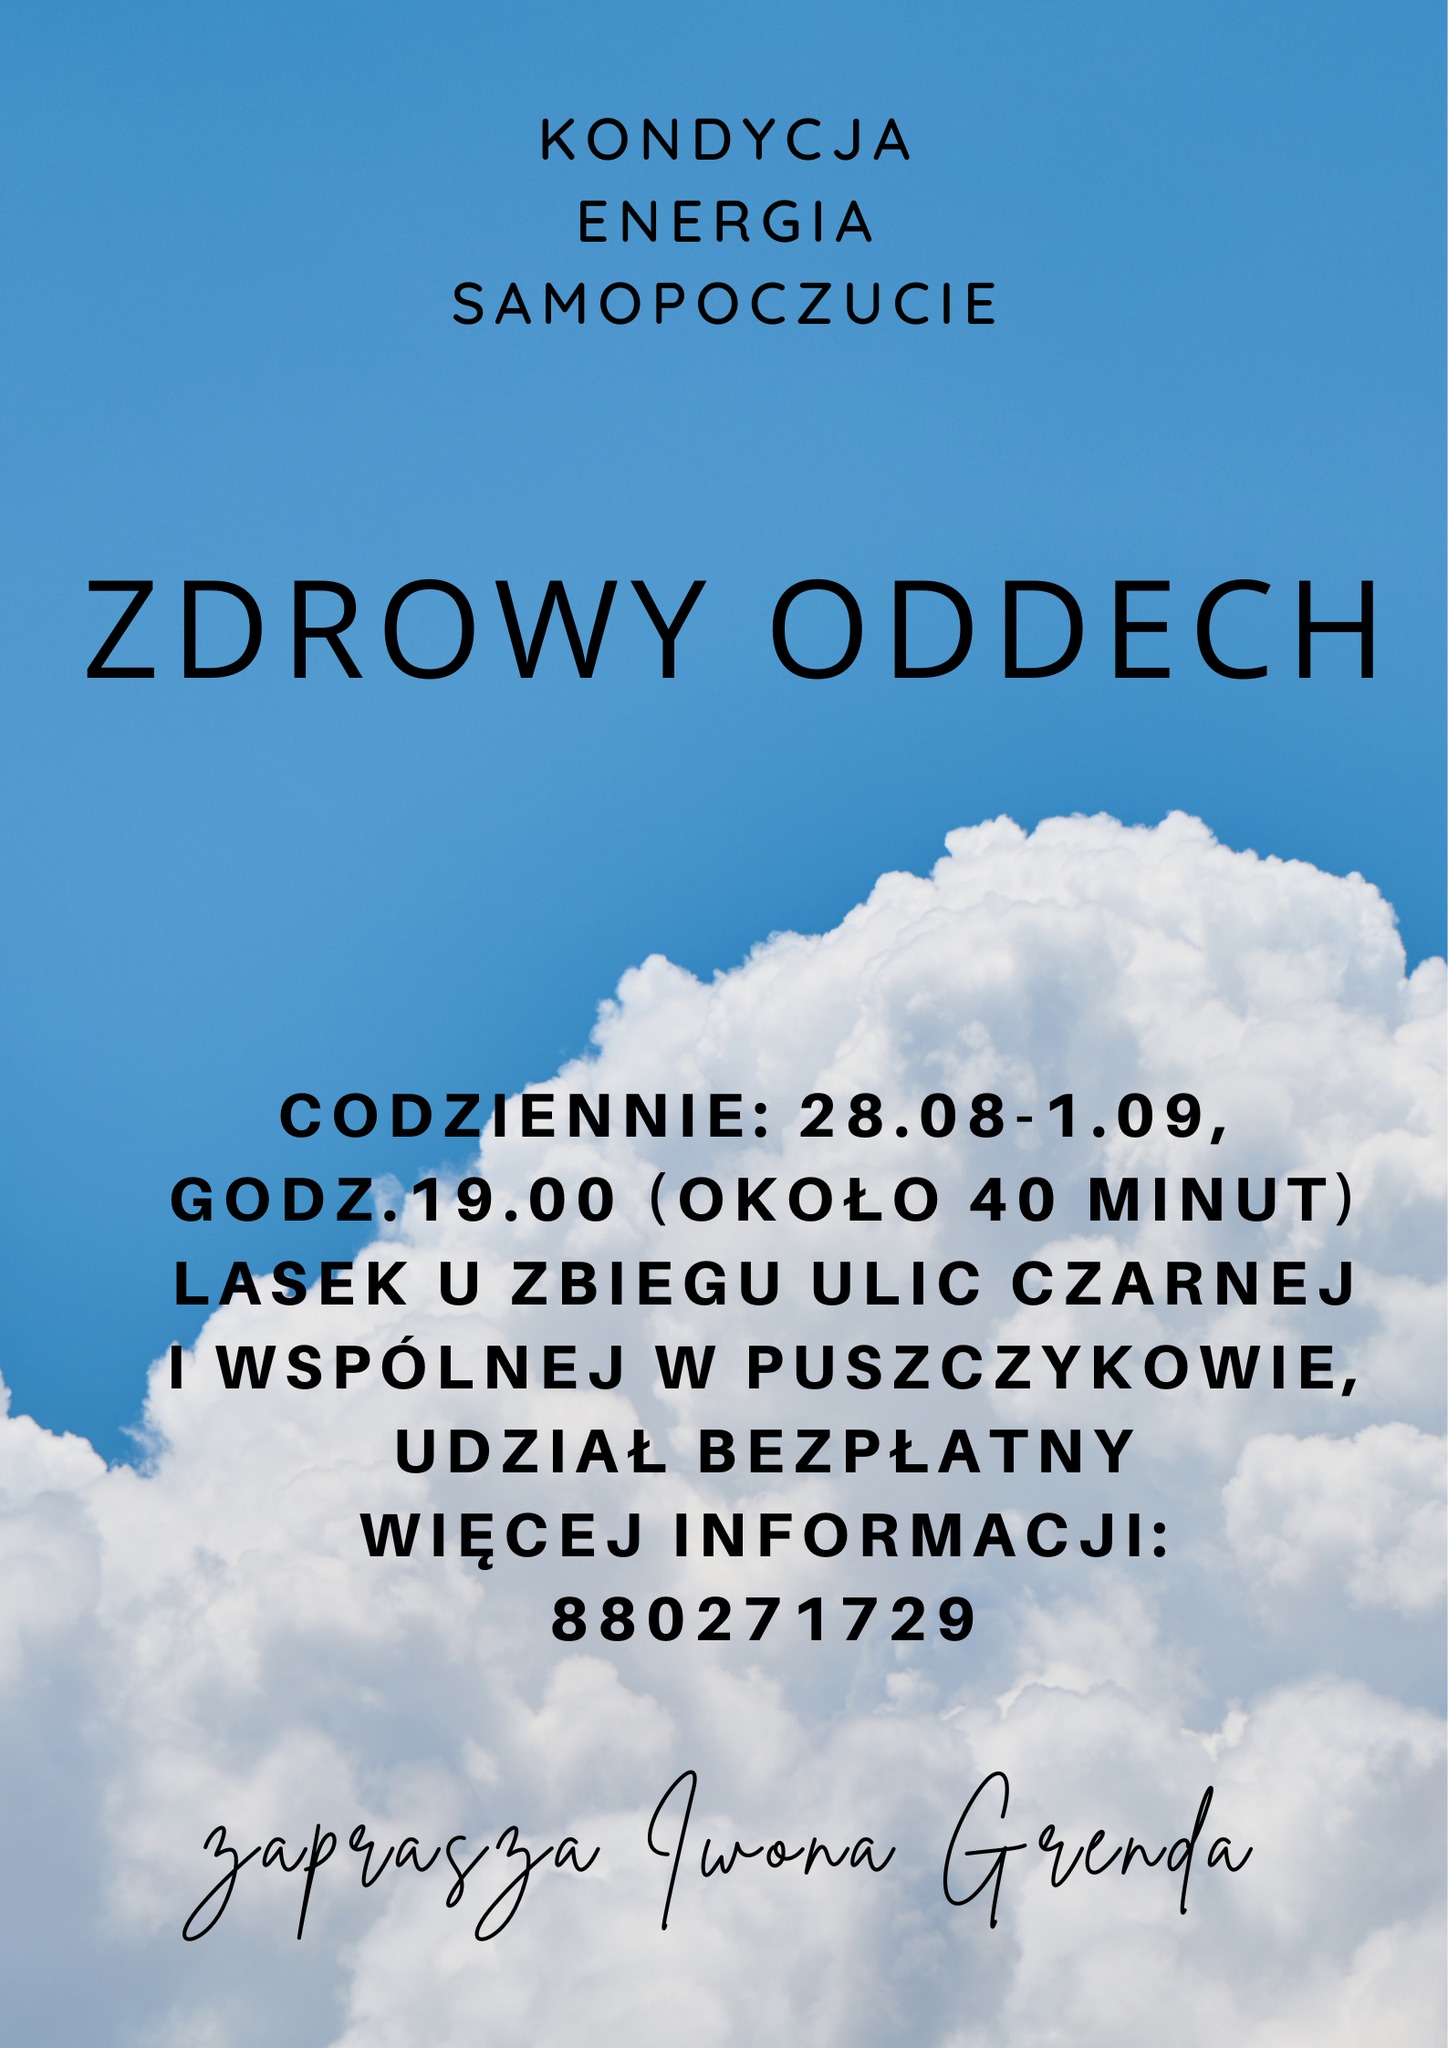 Serdecznie zapraszamy na darmowe spotkania "Zdrowy oddech" w willi Mimoza w Puszczykowie.